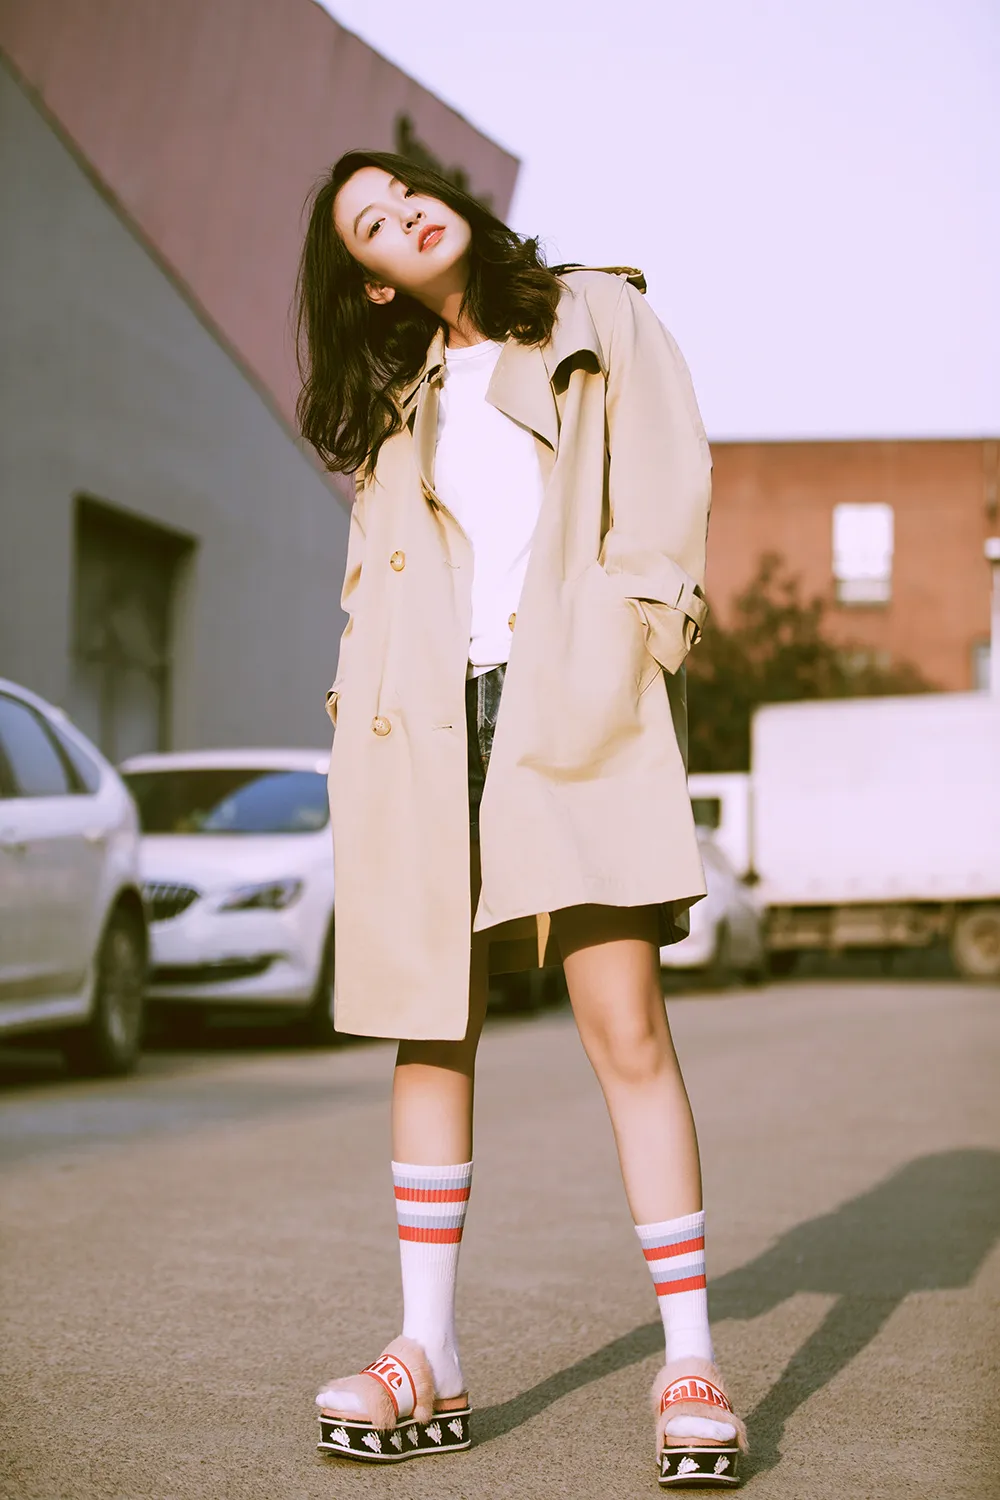 Wu Qian (actress-actress) warm color texture photo. JPG